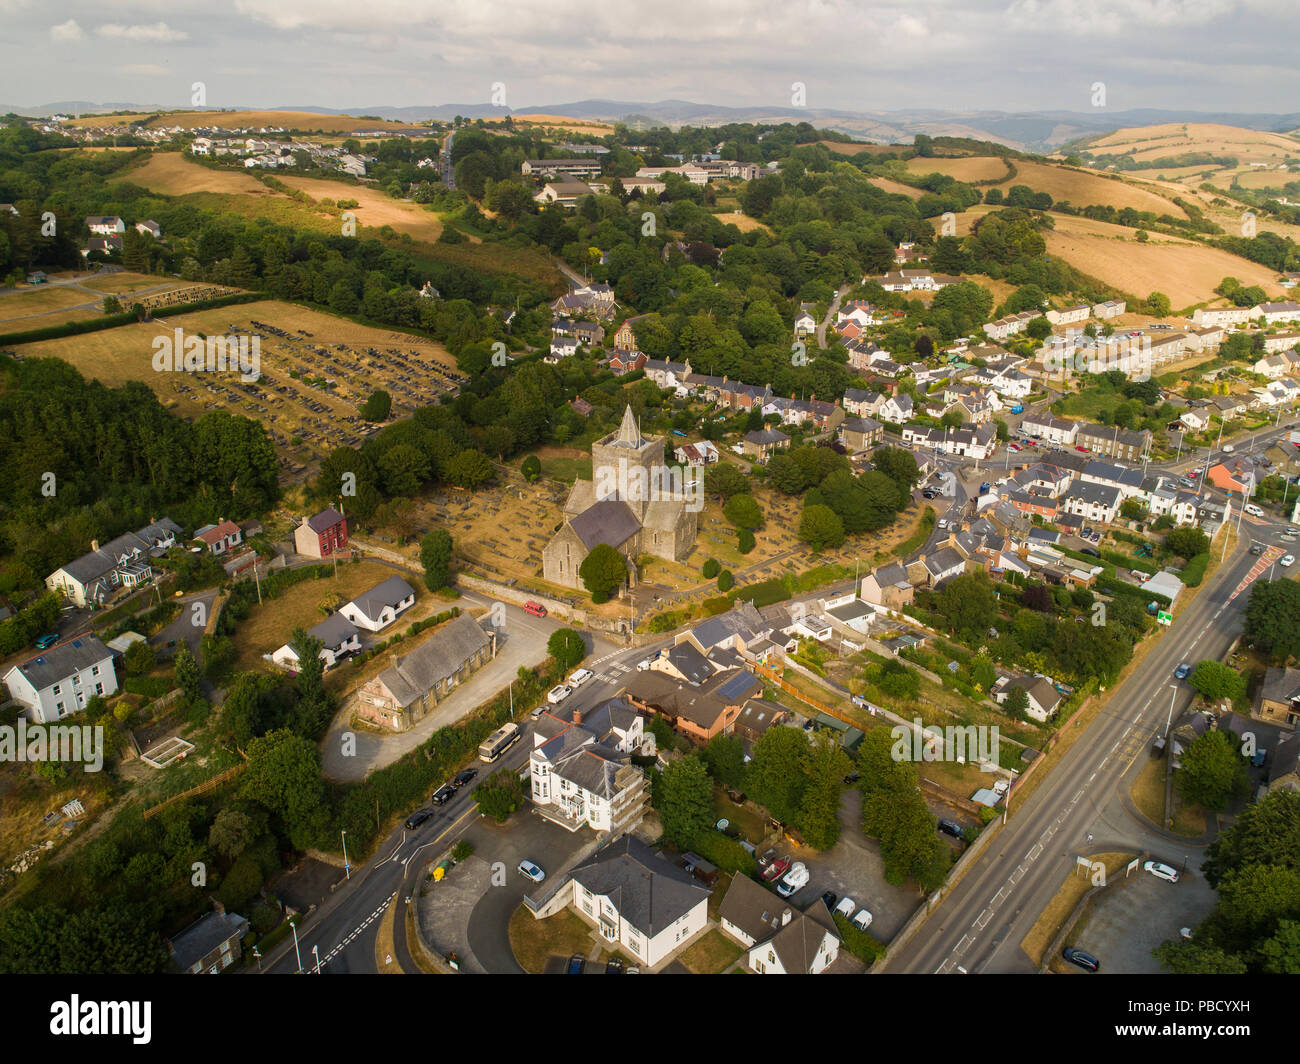 Drone aérien vue de l'église St Padarn médiévale dans le centre du village de Llanbadarn Fawr à la périphérie d''Aberystwyth, Ceredigion, pays de Galles, Royaume-Uni. L'été 2018, montrant la région aride champs sec résultant de la sécheresse de l'été Banque D'Images